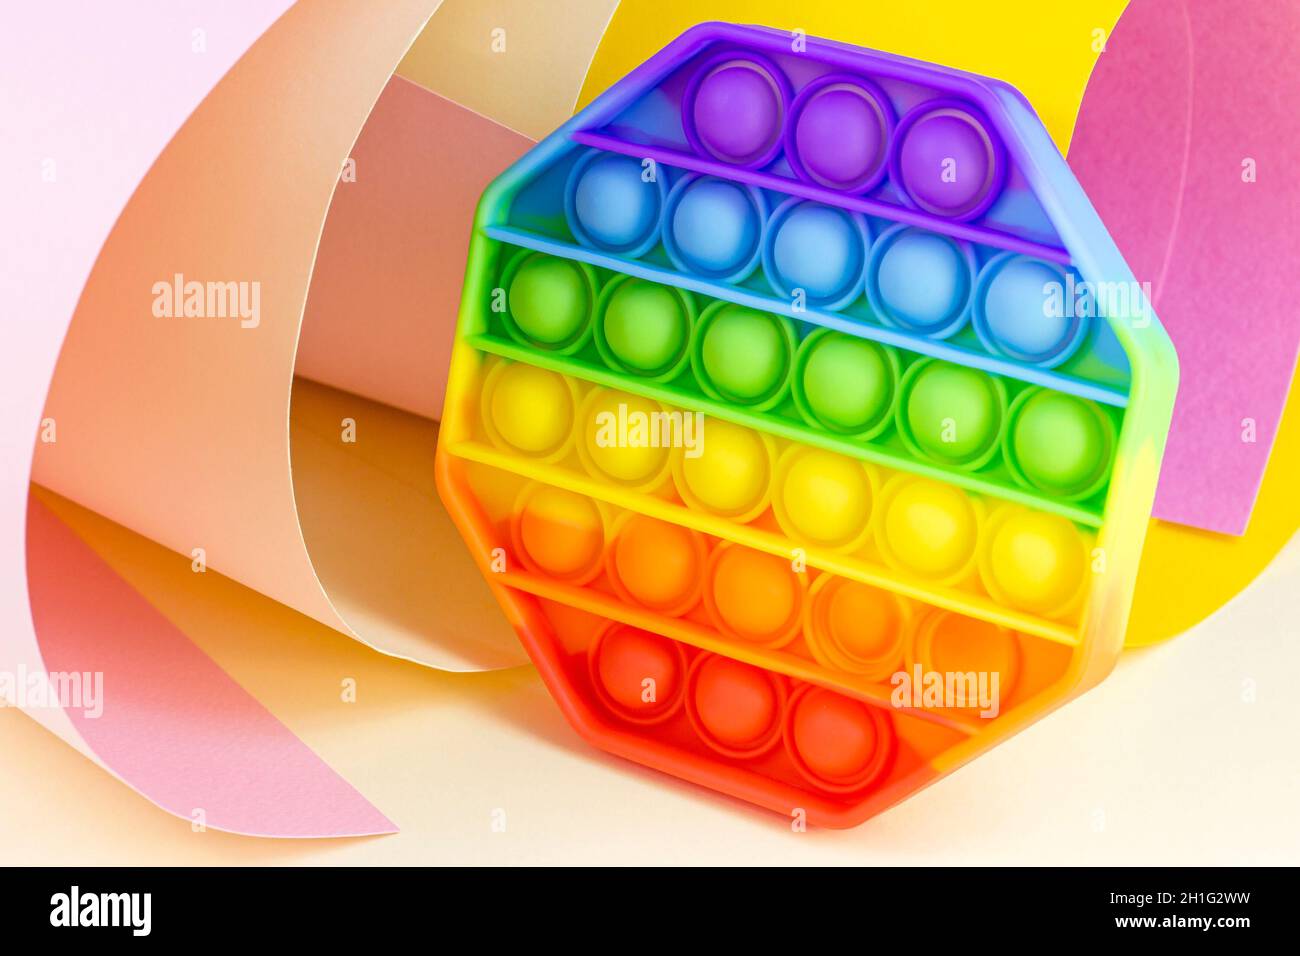 Trendy semplice dimple o pop IT sensoriale giocattolo per bambini su sfondo di carta brillante. Popolare antistress silicone bambini bolla fidget in colori arcobaleno. Foto Stock